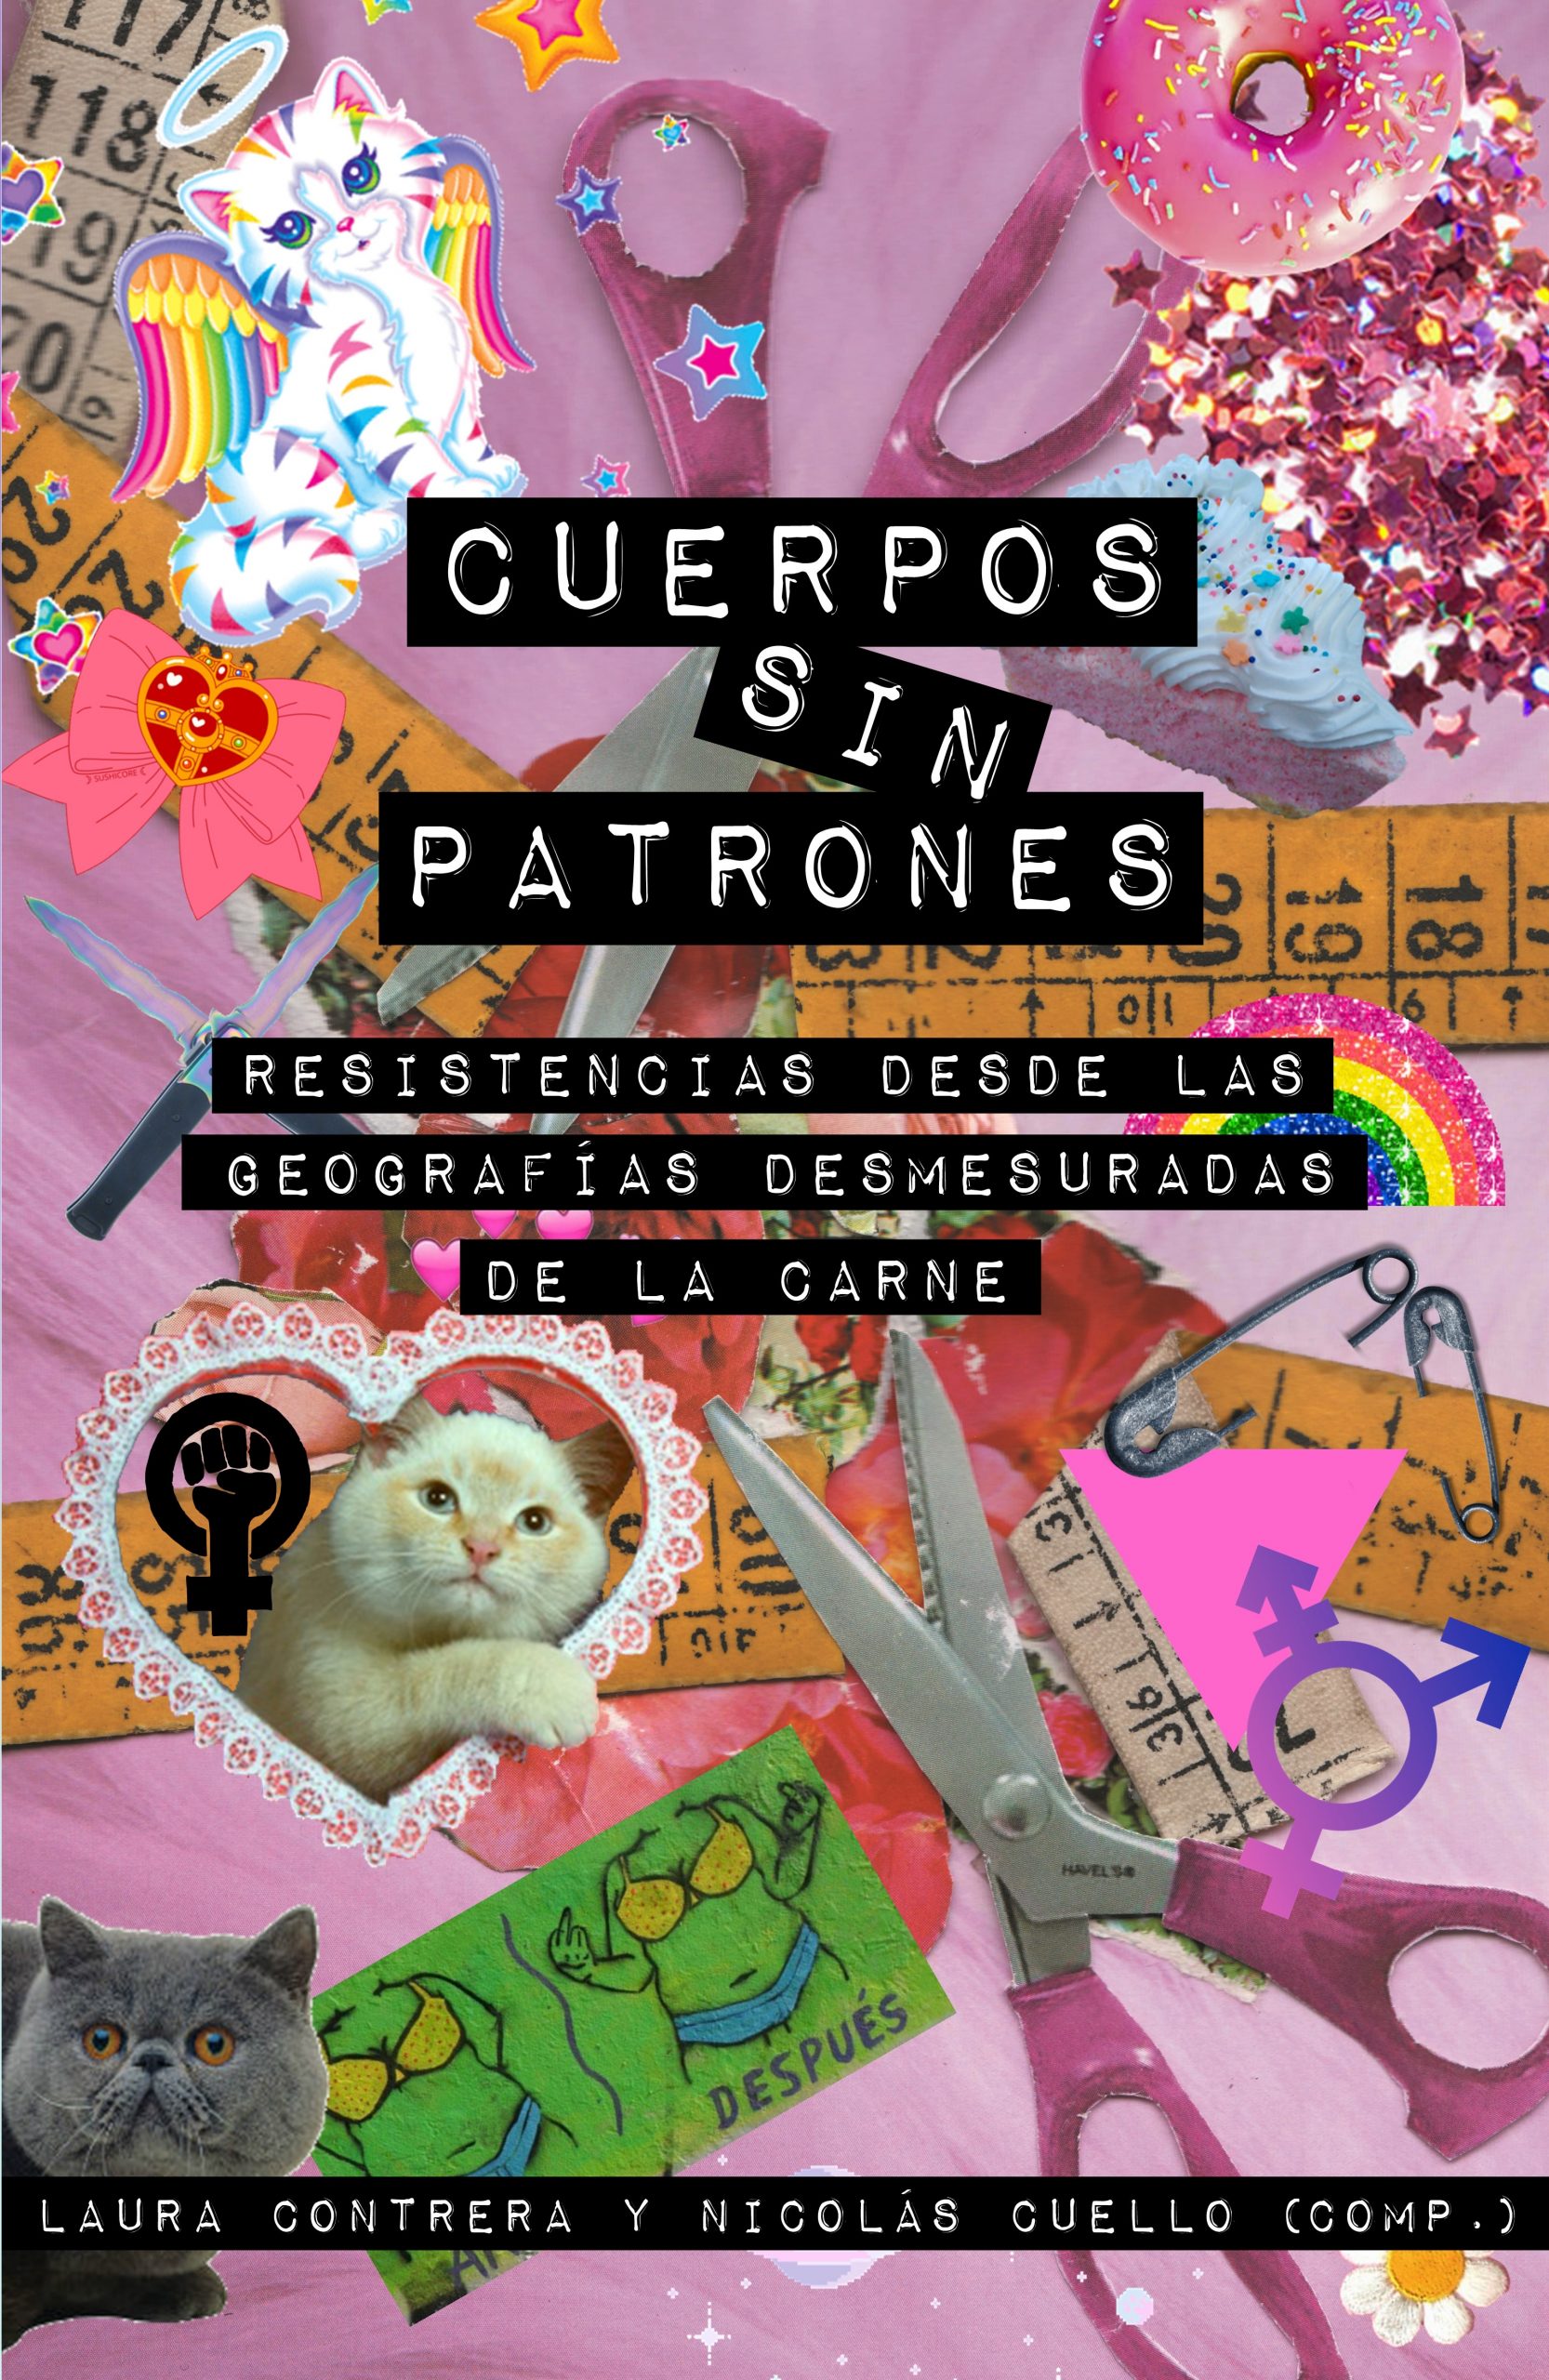 CUERPOS SIN PATRONES - Laura Contreras y Nicolás Cuello